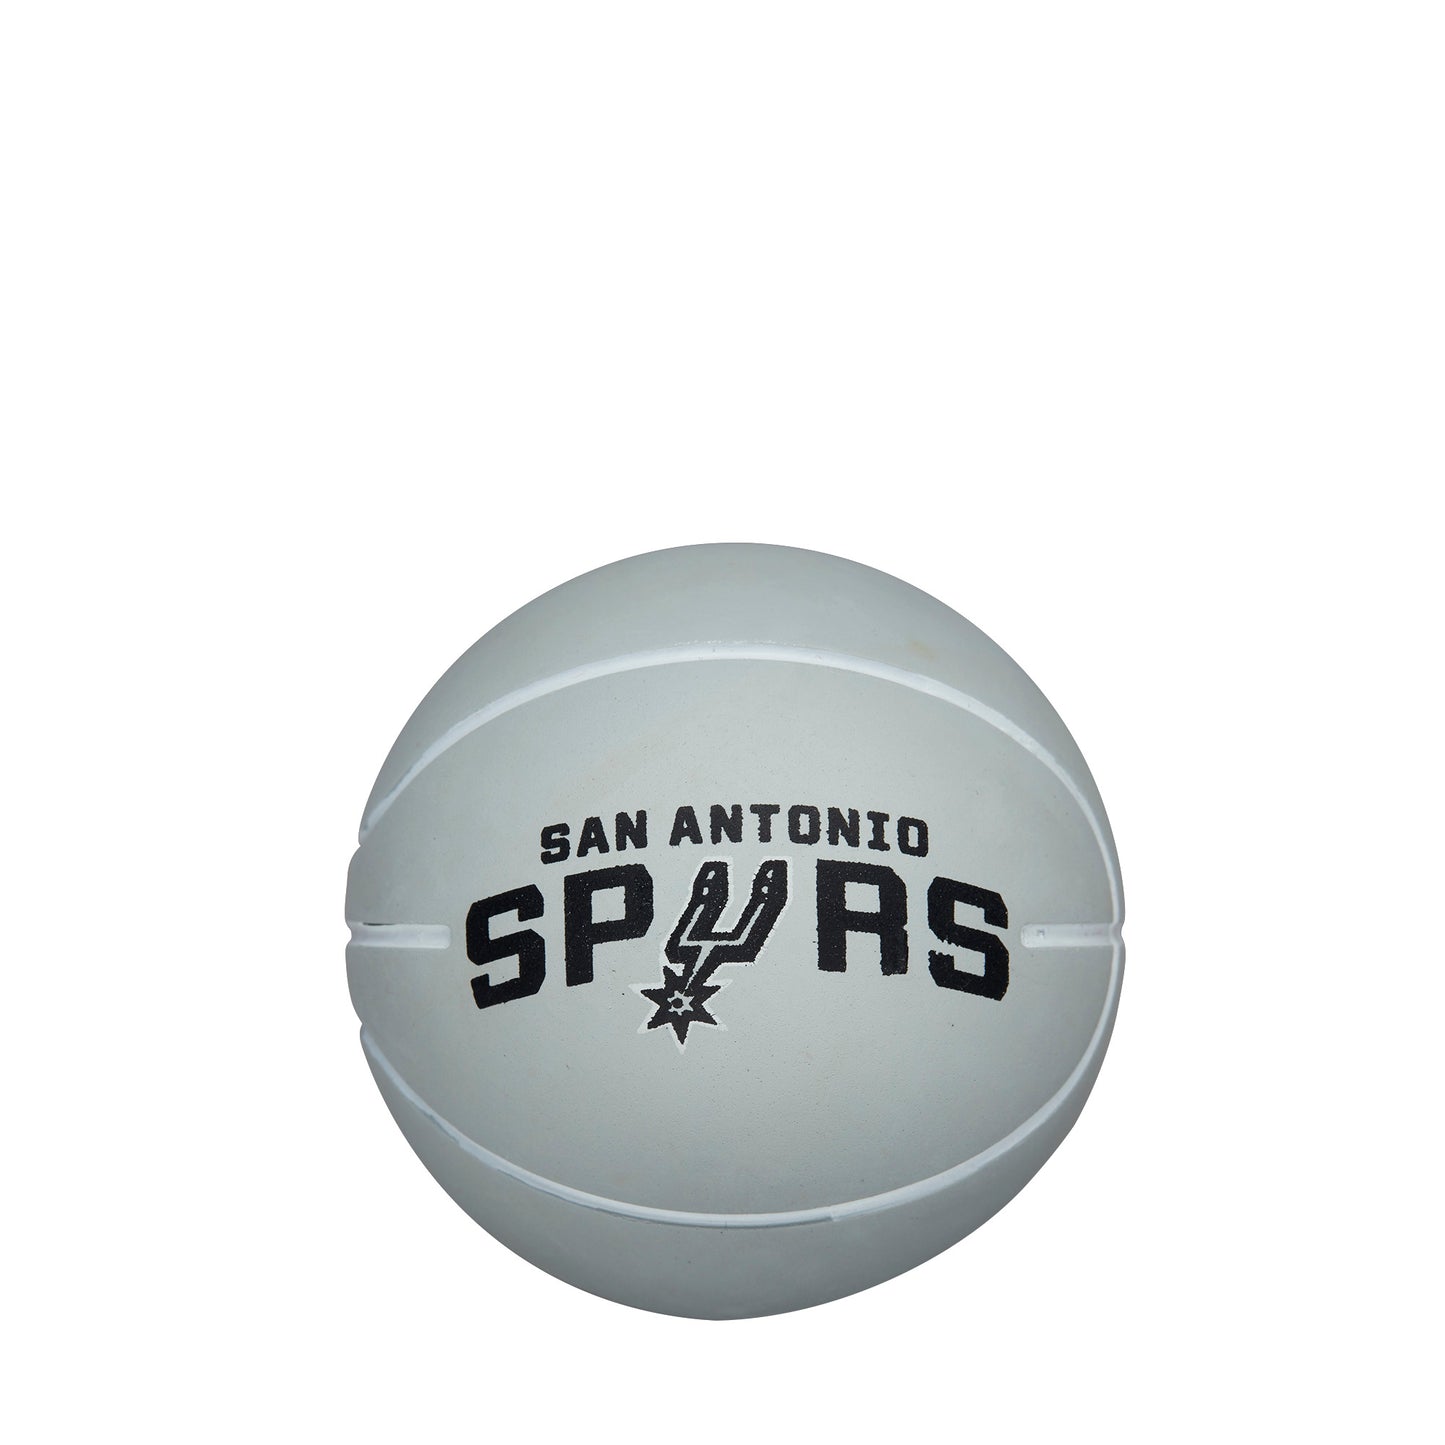 Wilson NBA DRIBBLER BASKETBALL SAN ANTONIO SPURS Grey WTB1100SA